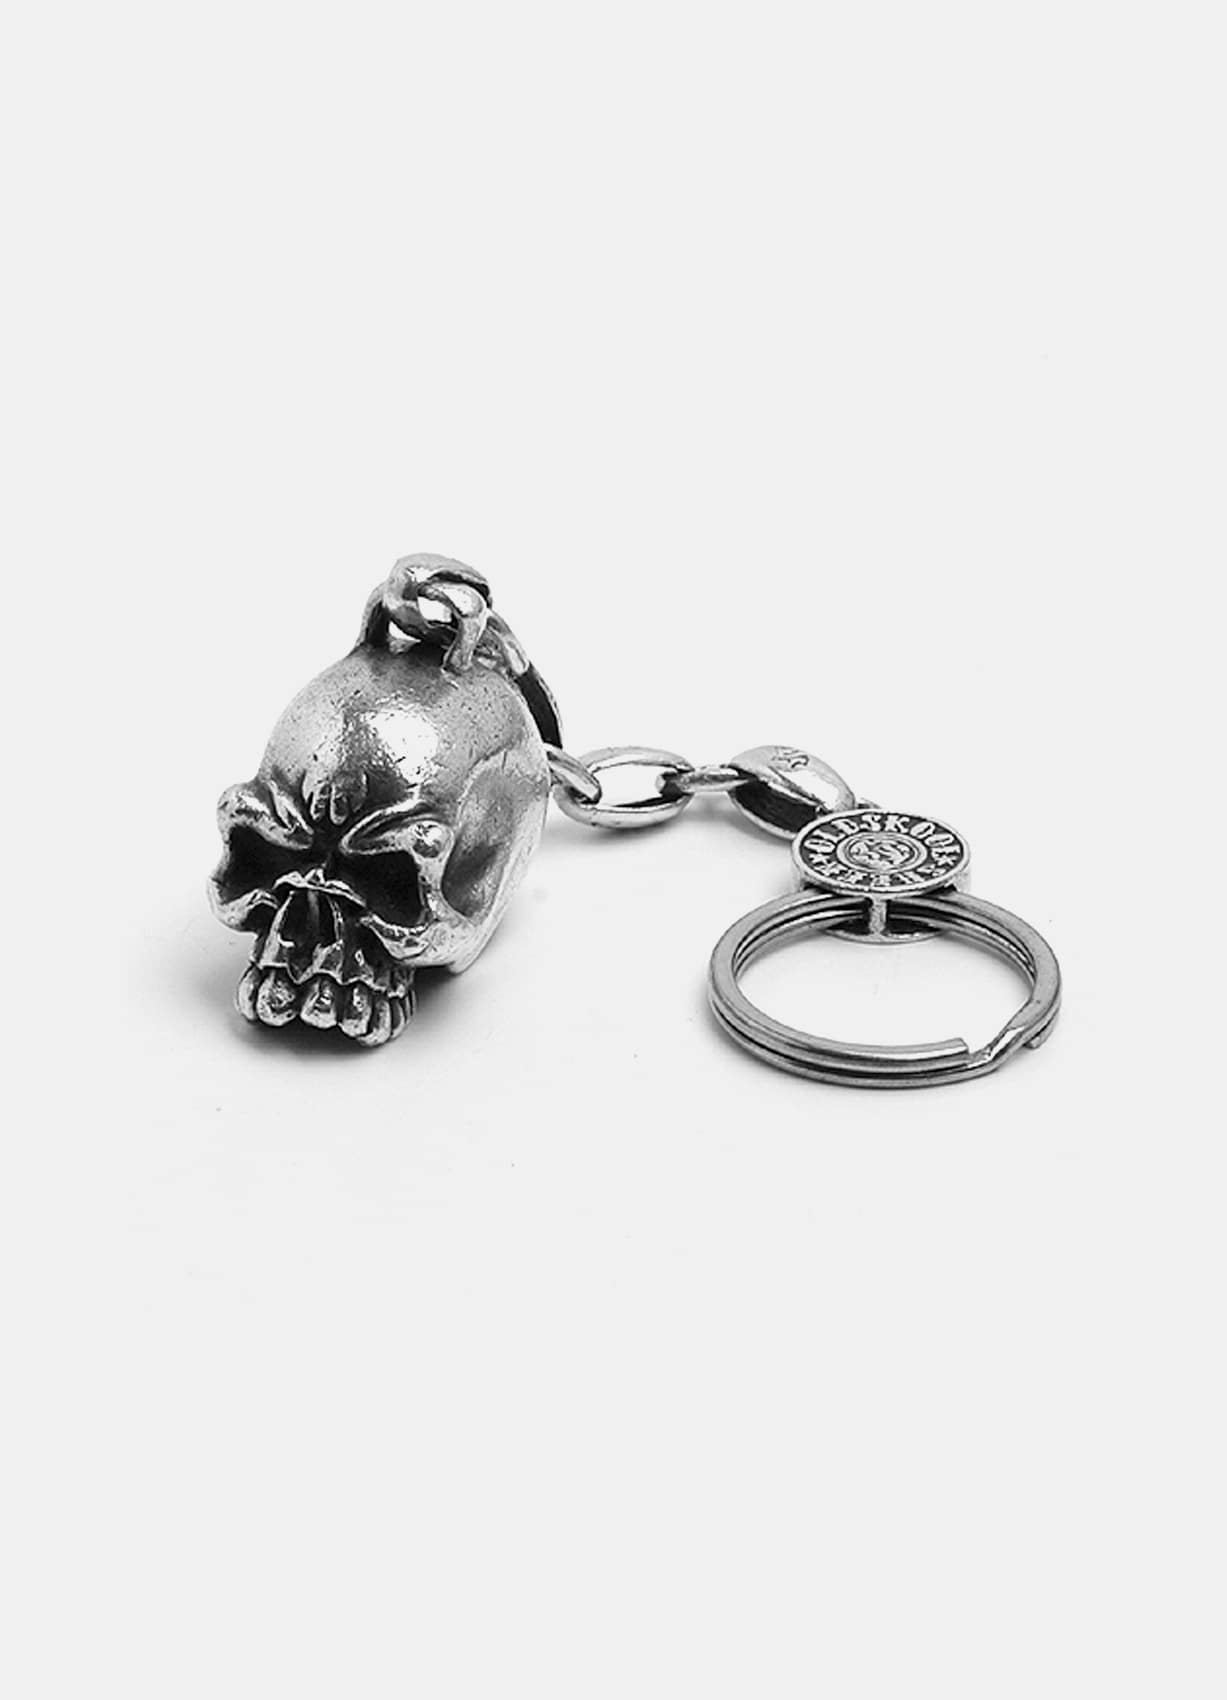 OG Big Skull Silver Key Chain